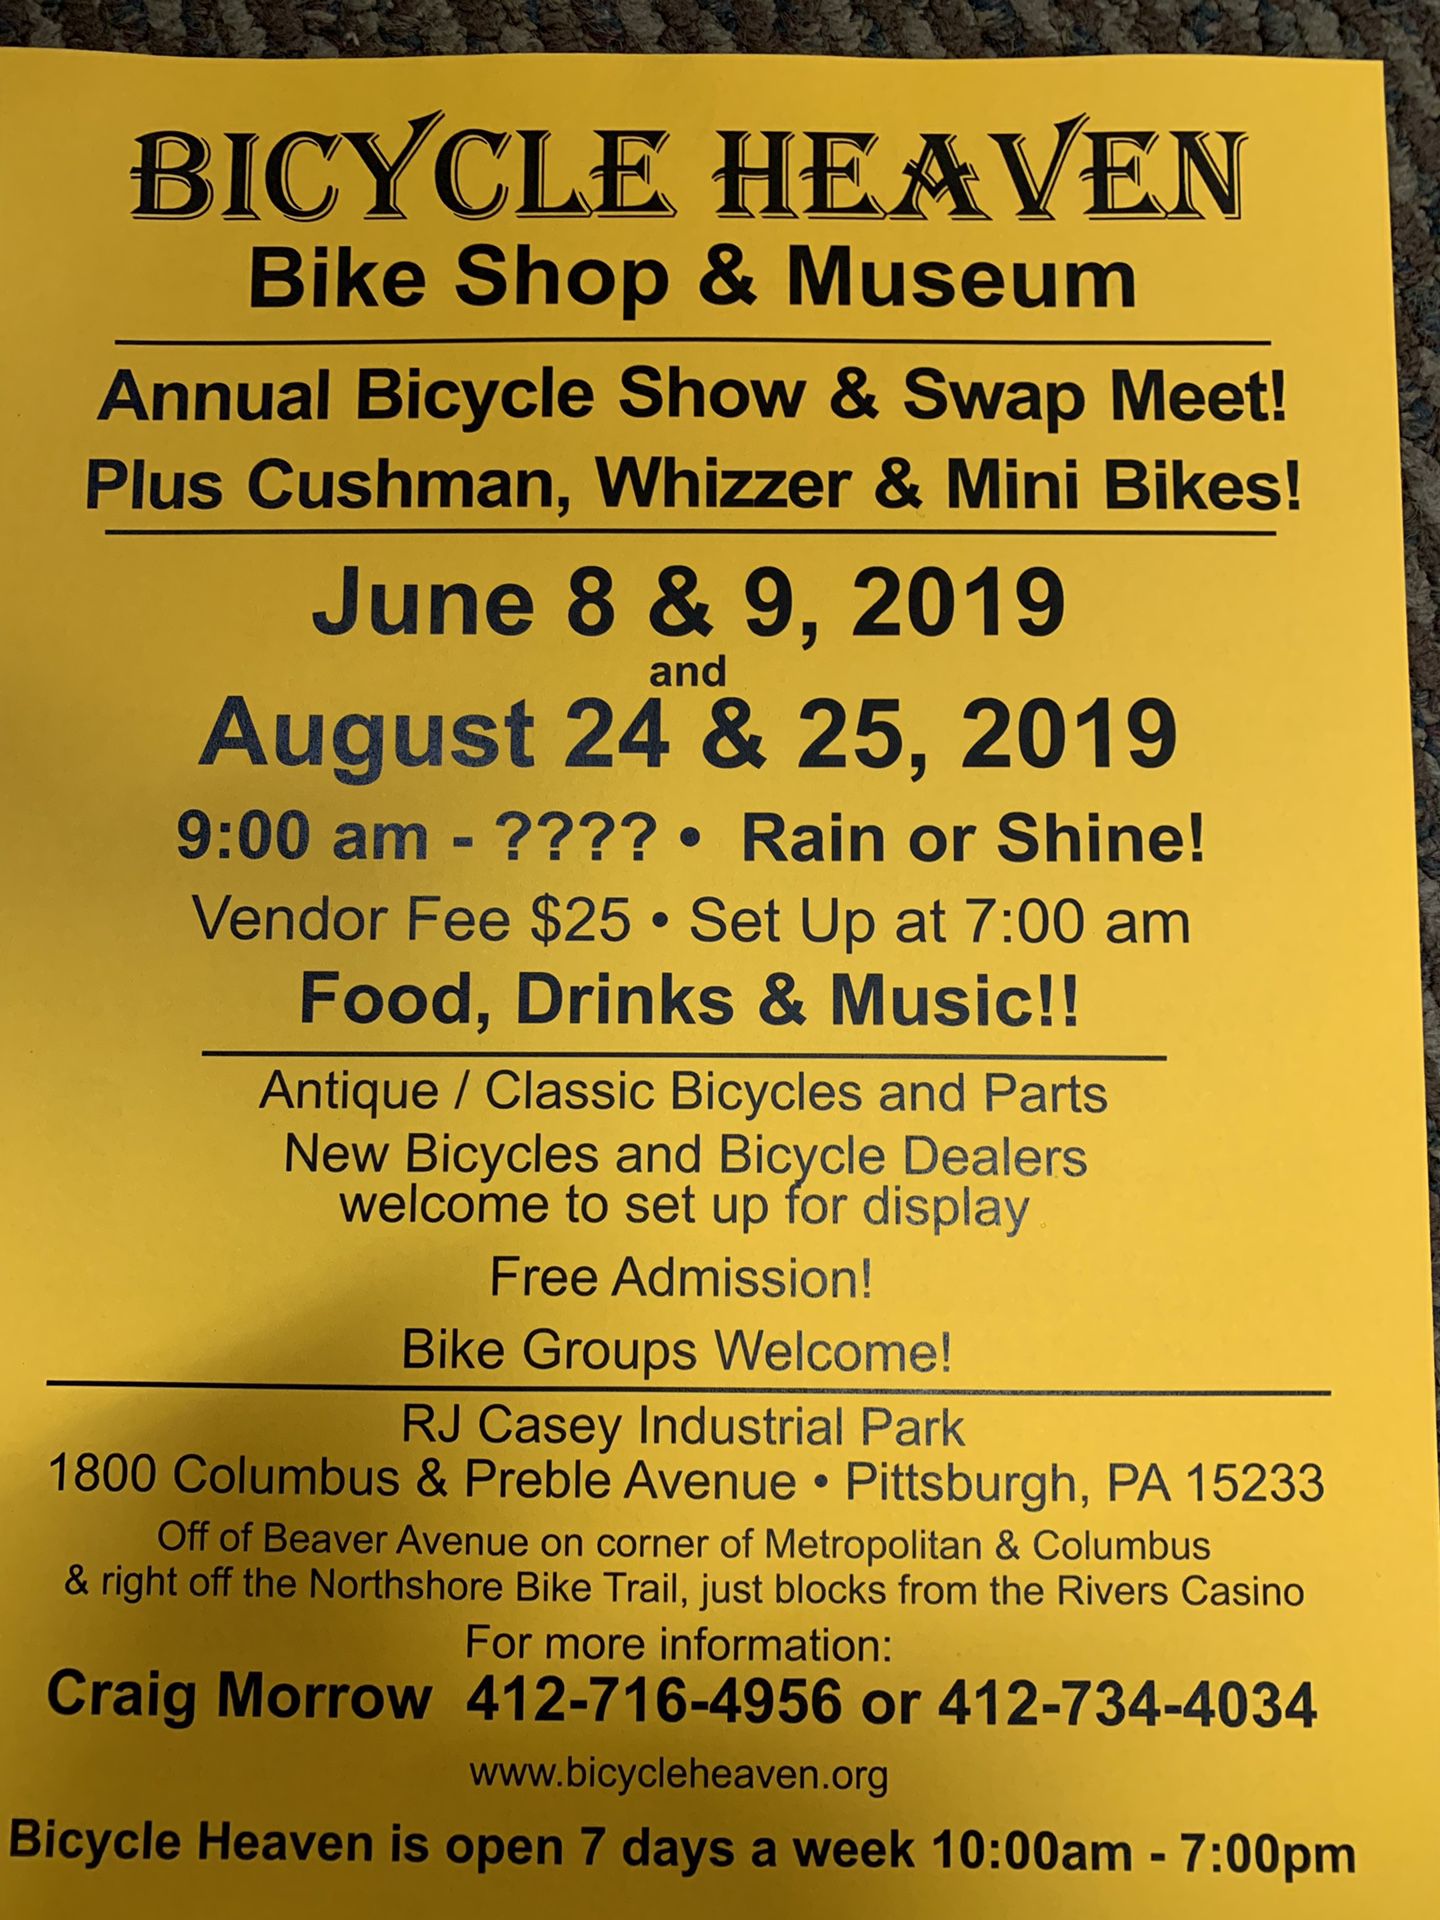 Bike show swap meet this June 8 & 9 2019